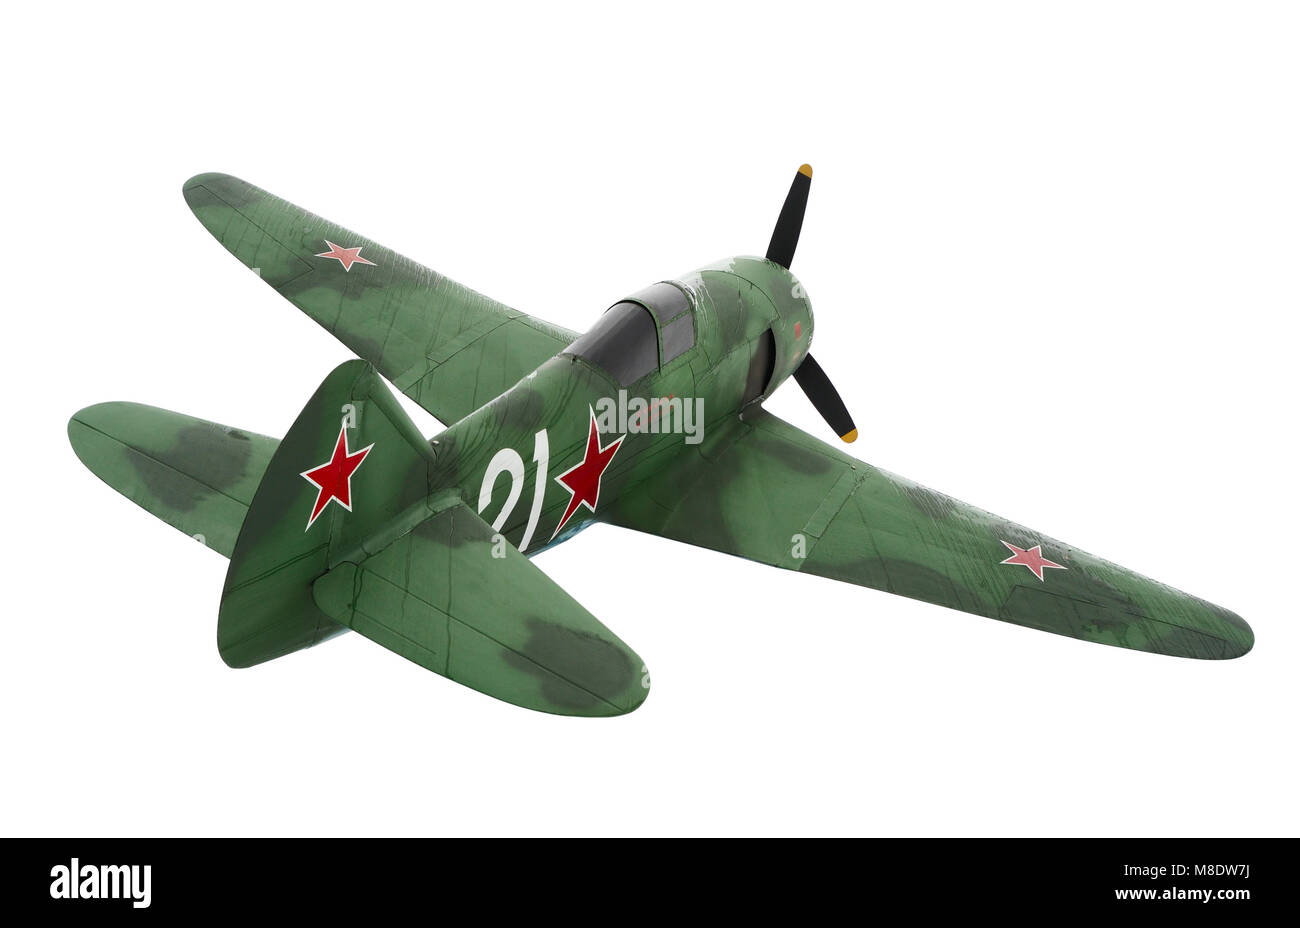 Vecchia Unione Sovietica aerei militari la-7 degli aerei da caccia della II Guerra Mondiale Foto Stock